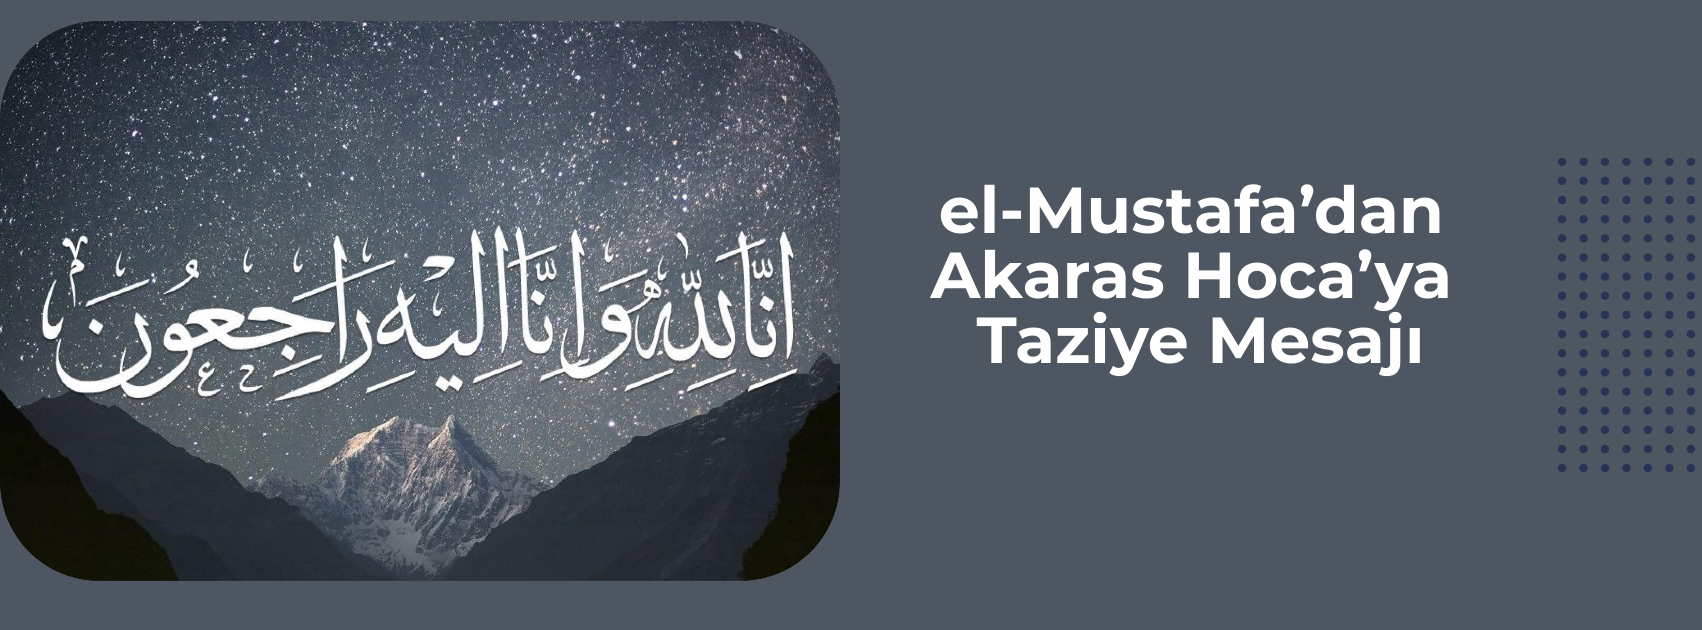 el-Mustafa’dan Akaras Hoca’ya Taziye Mesajı